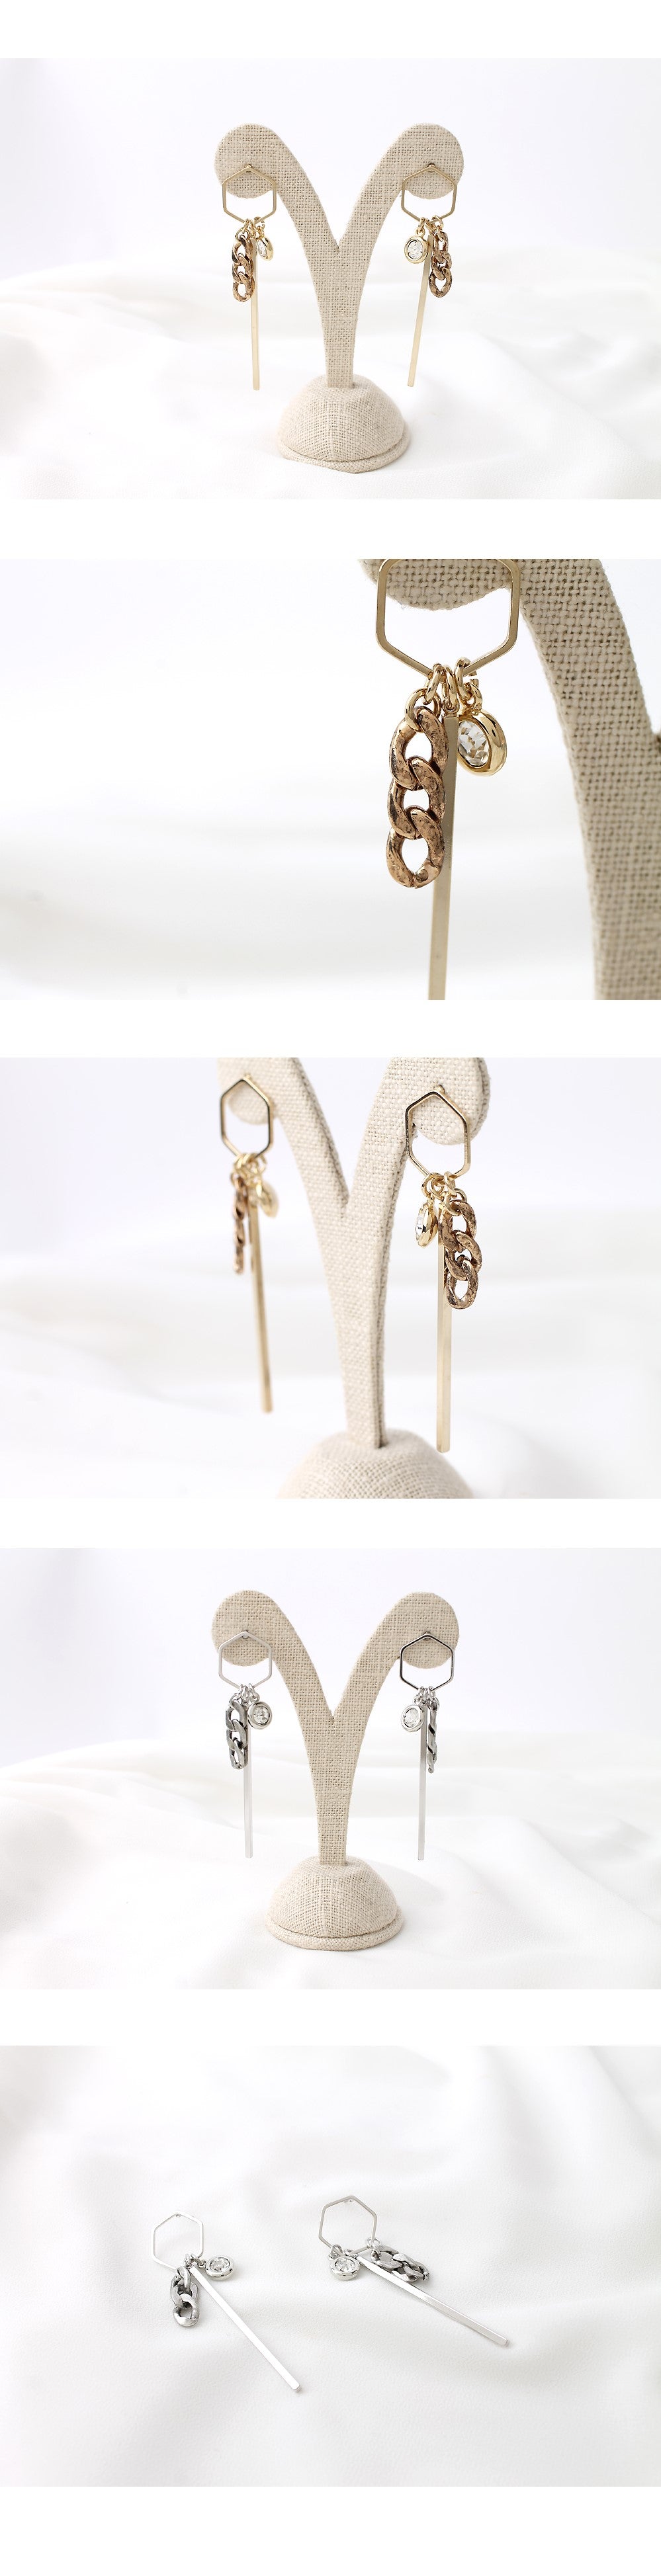 Stick & Chain Drop Earrings-holihoilc.com